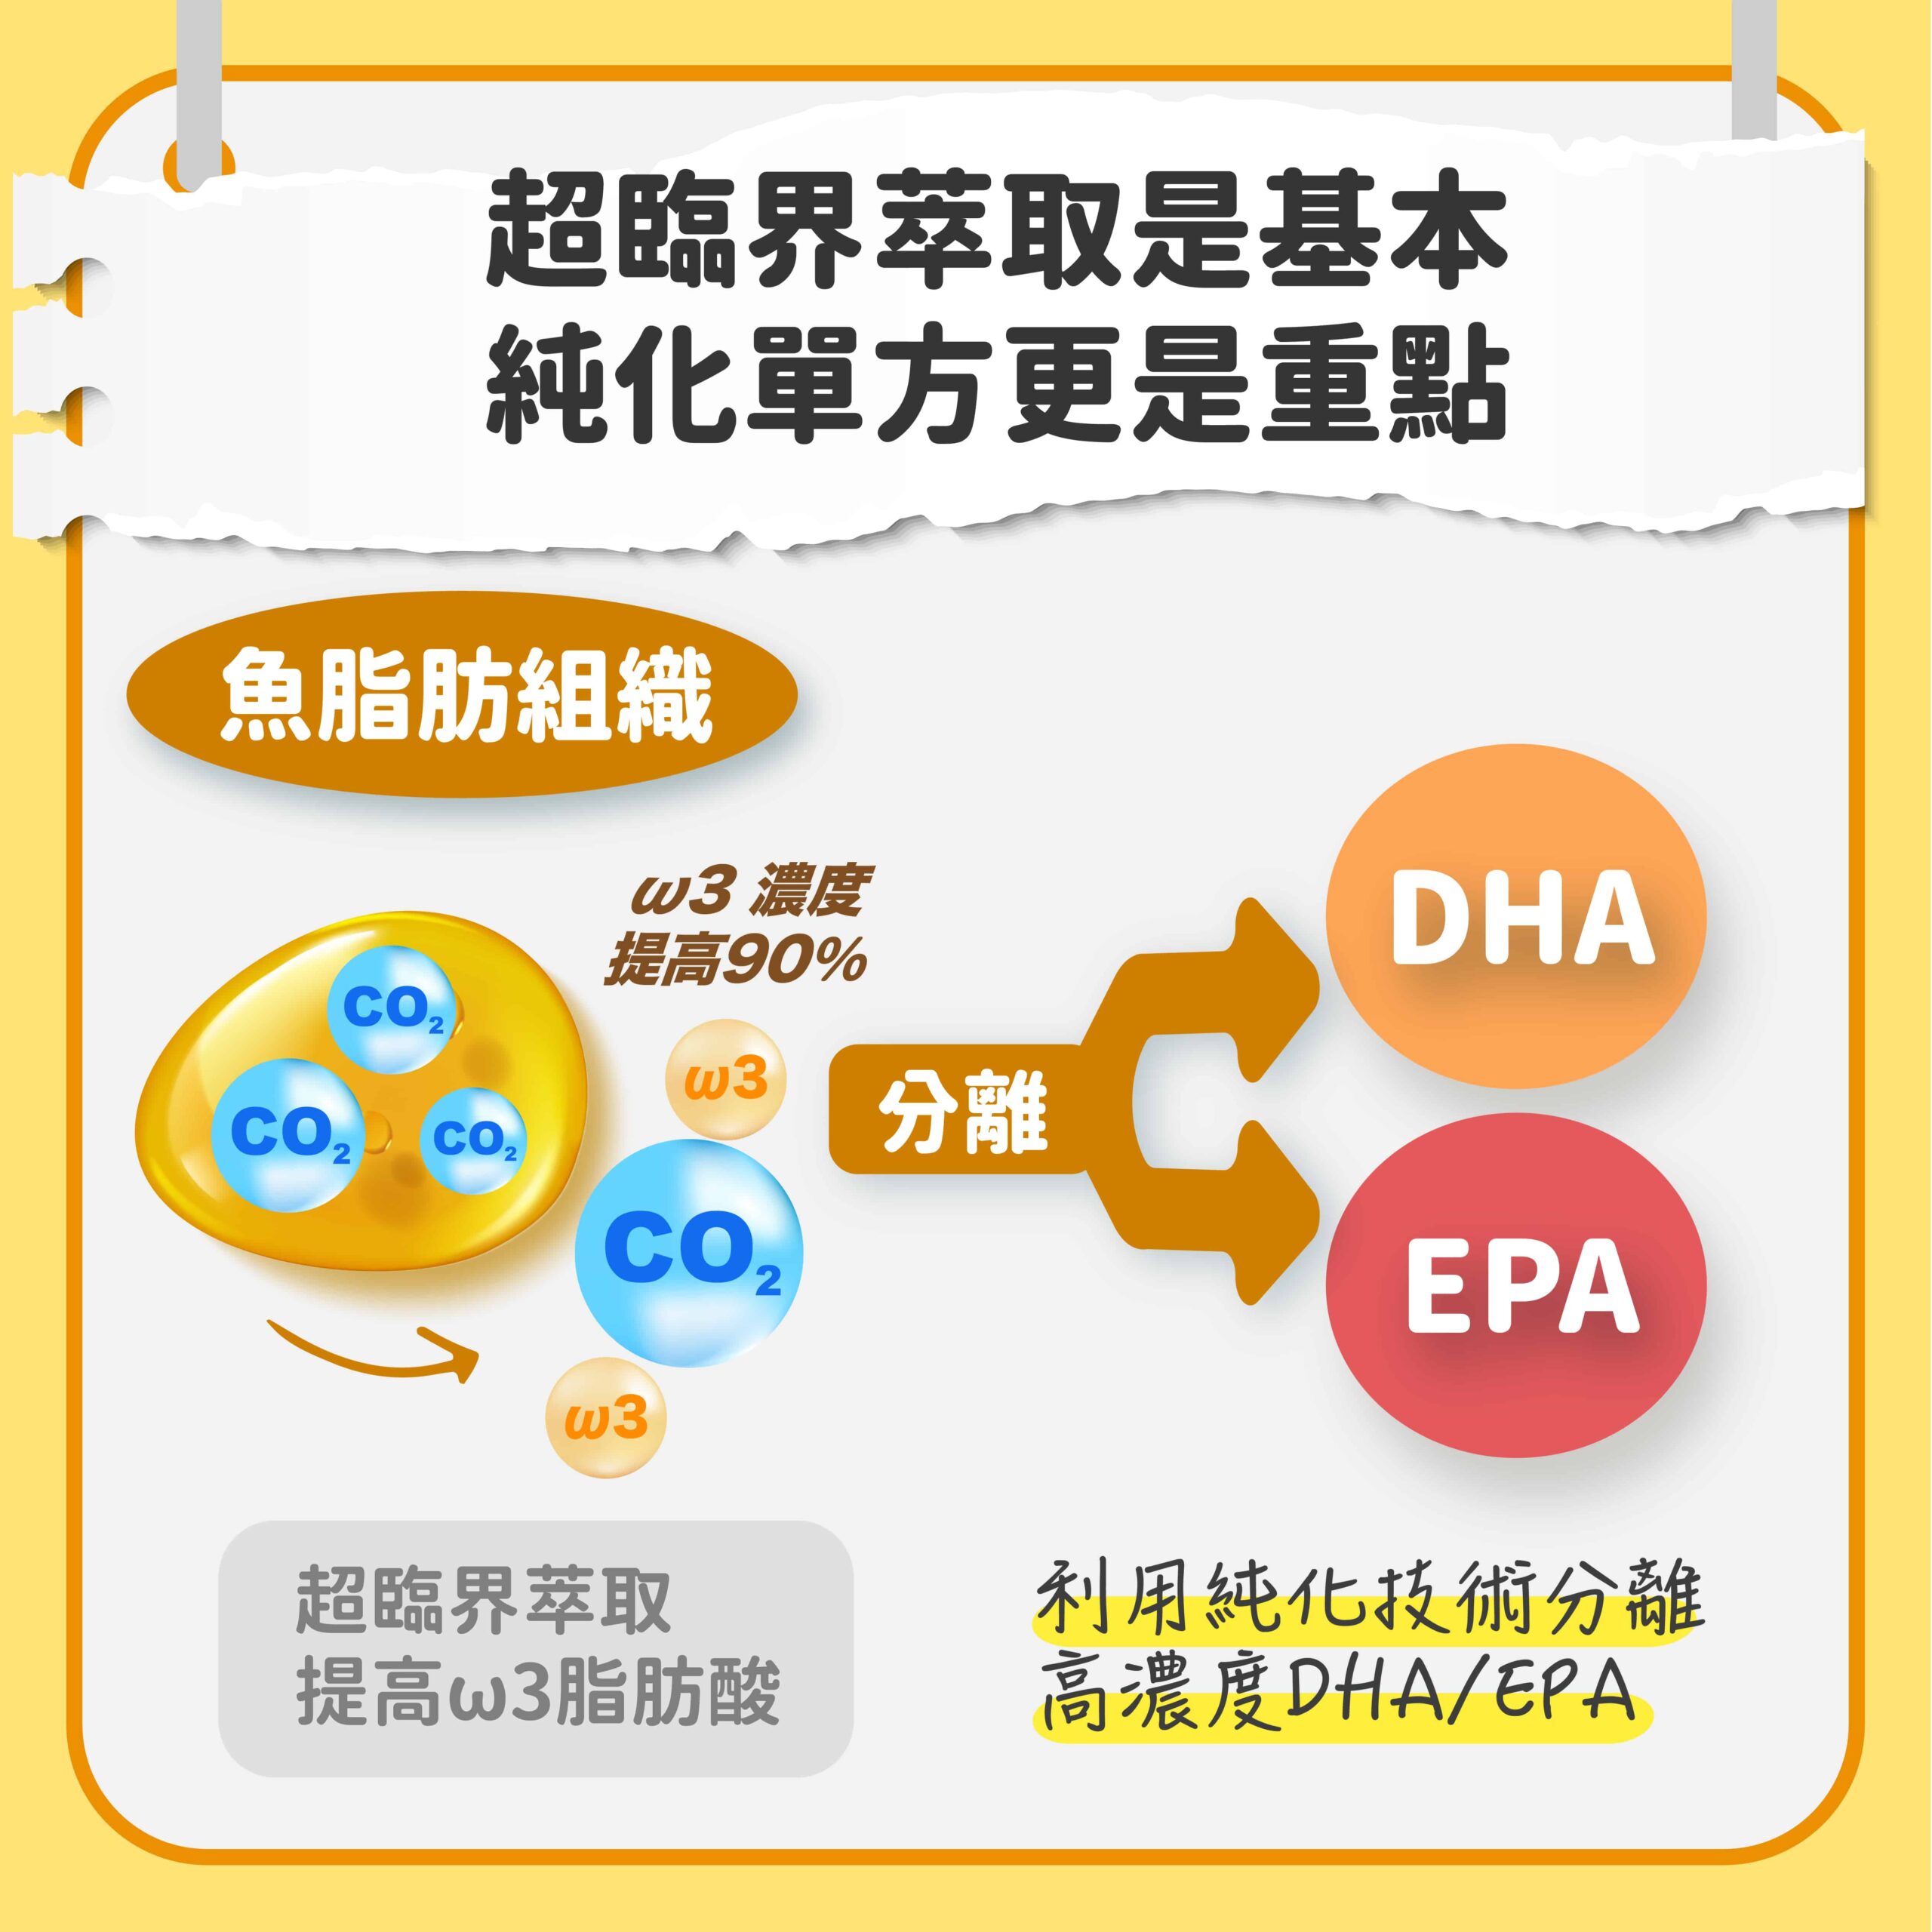 魚油製程-魚油加工-魚油純化-DHA-EPA-超臨界萃取